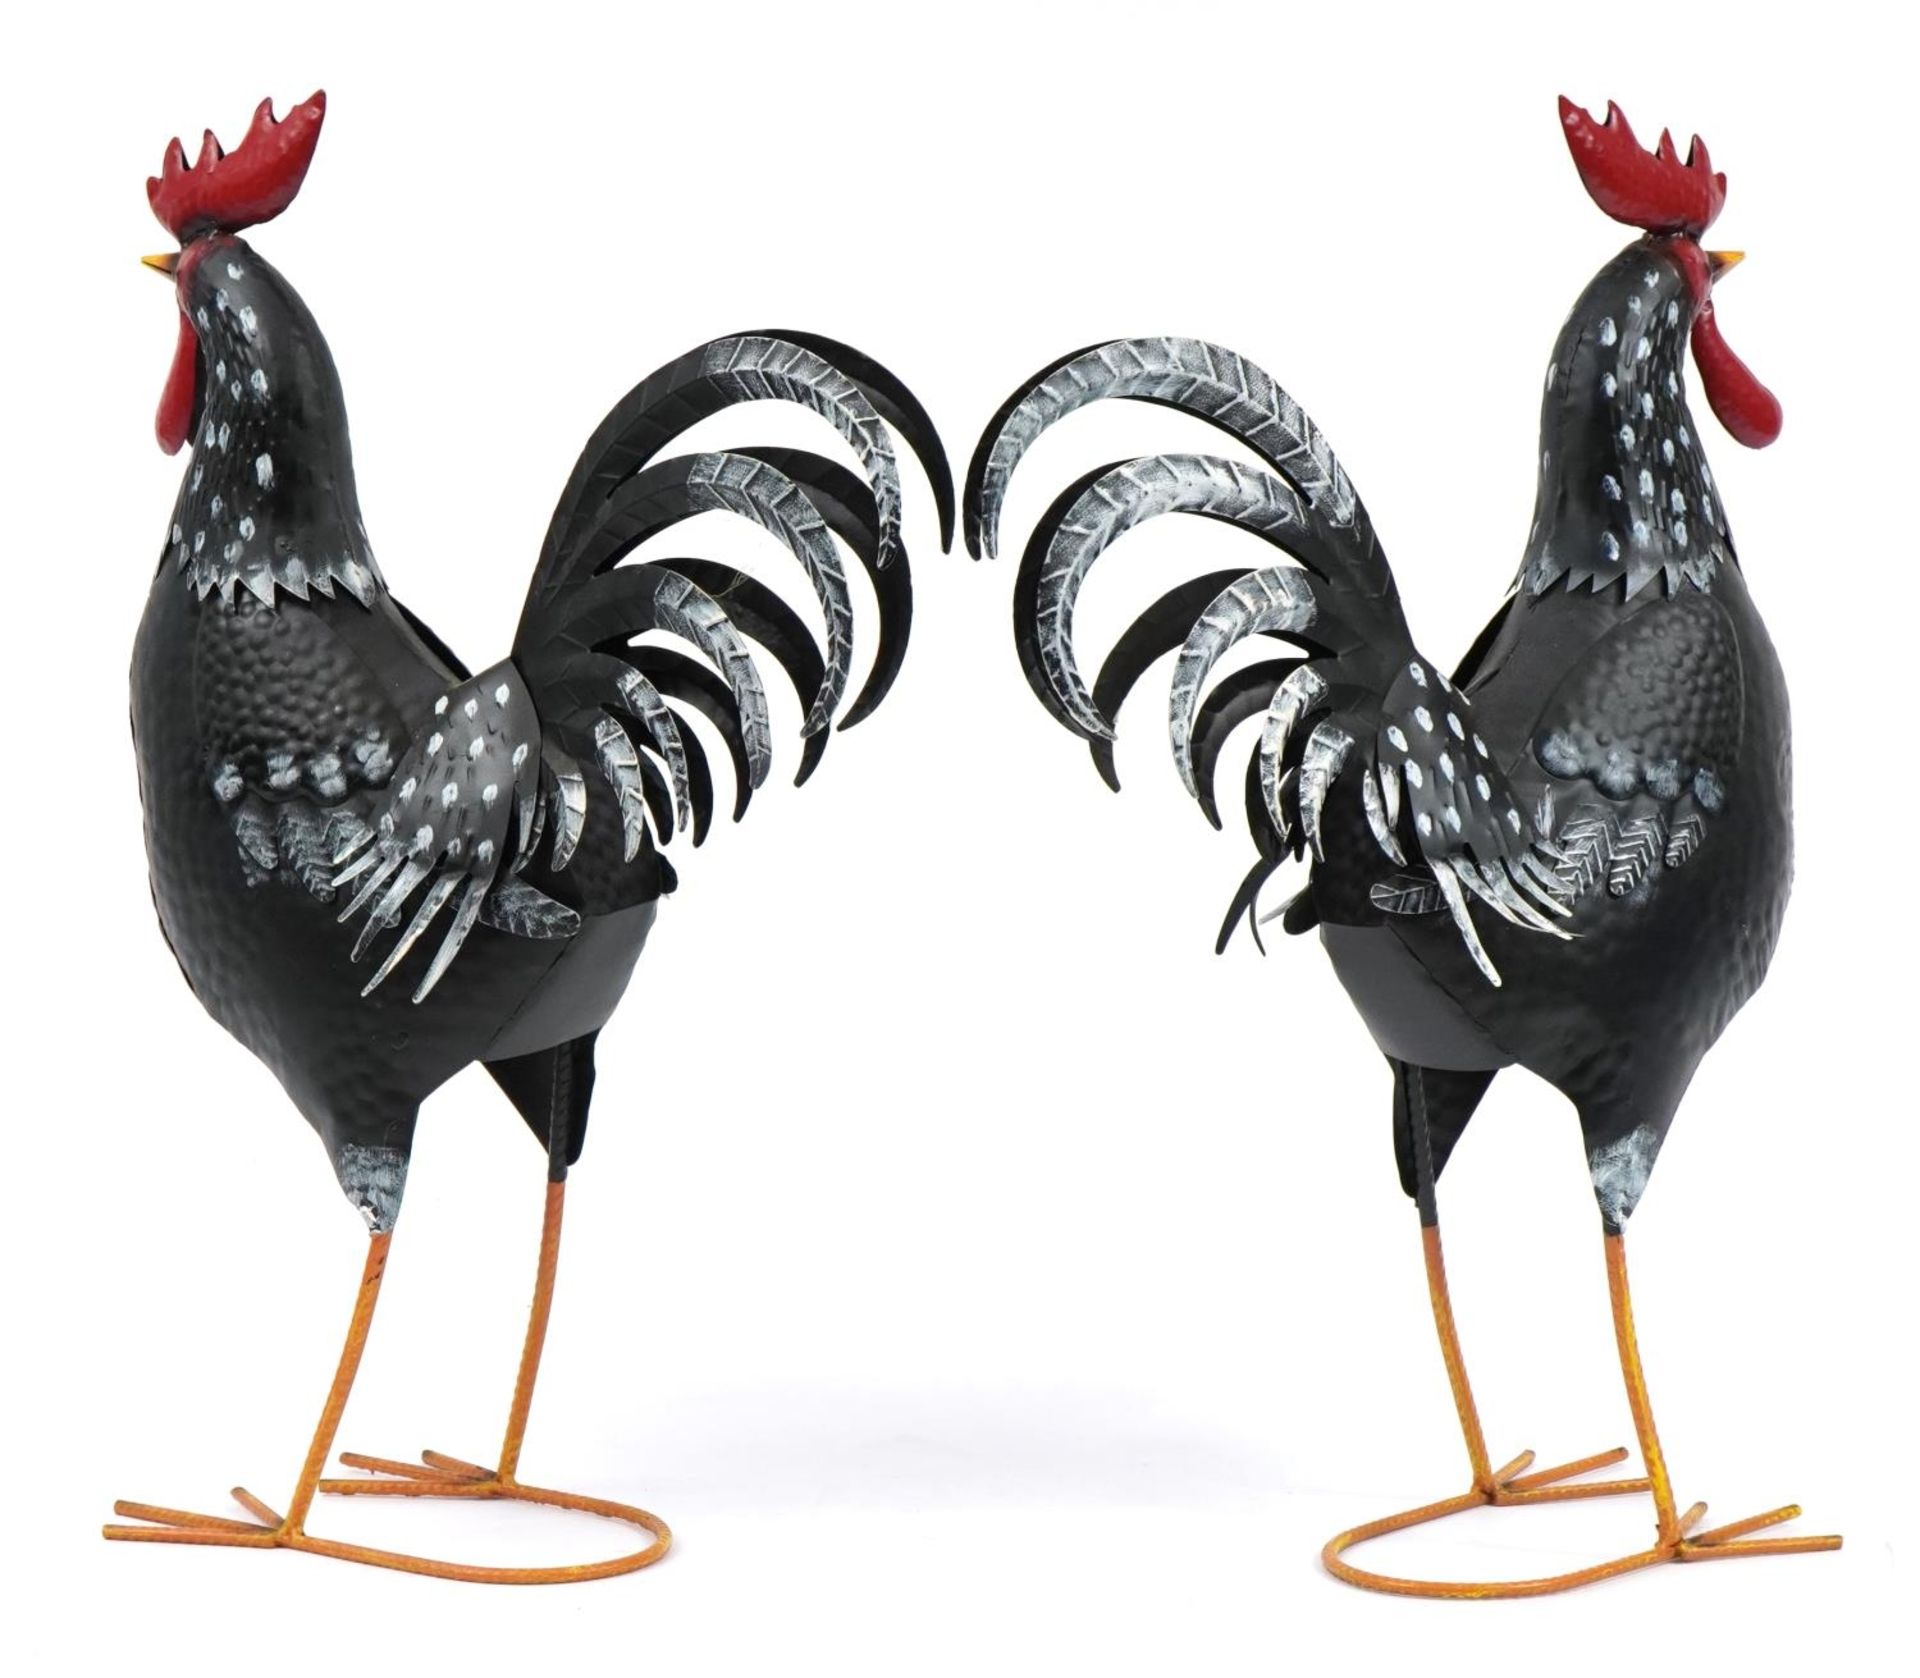 Pair of painted metal cockerels, 59cm high - Image 2 of 3